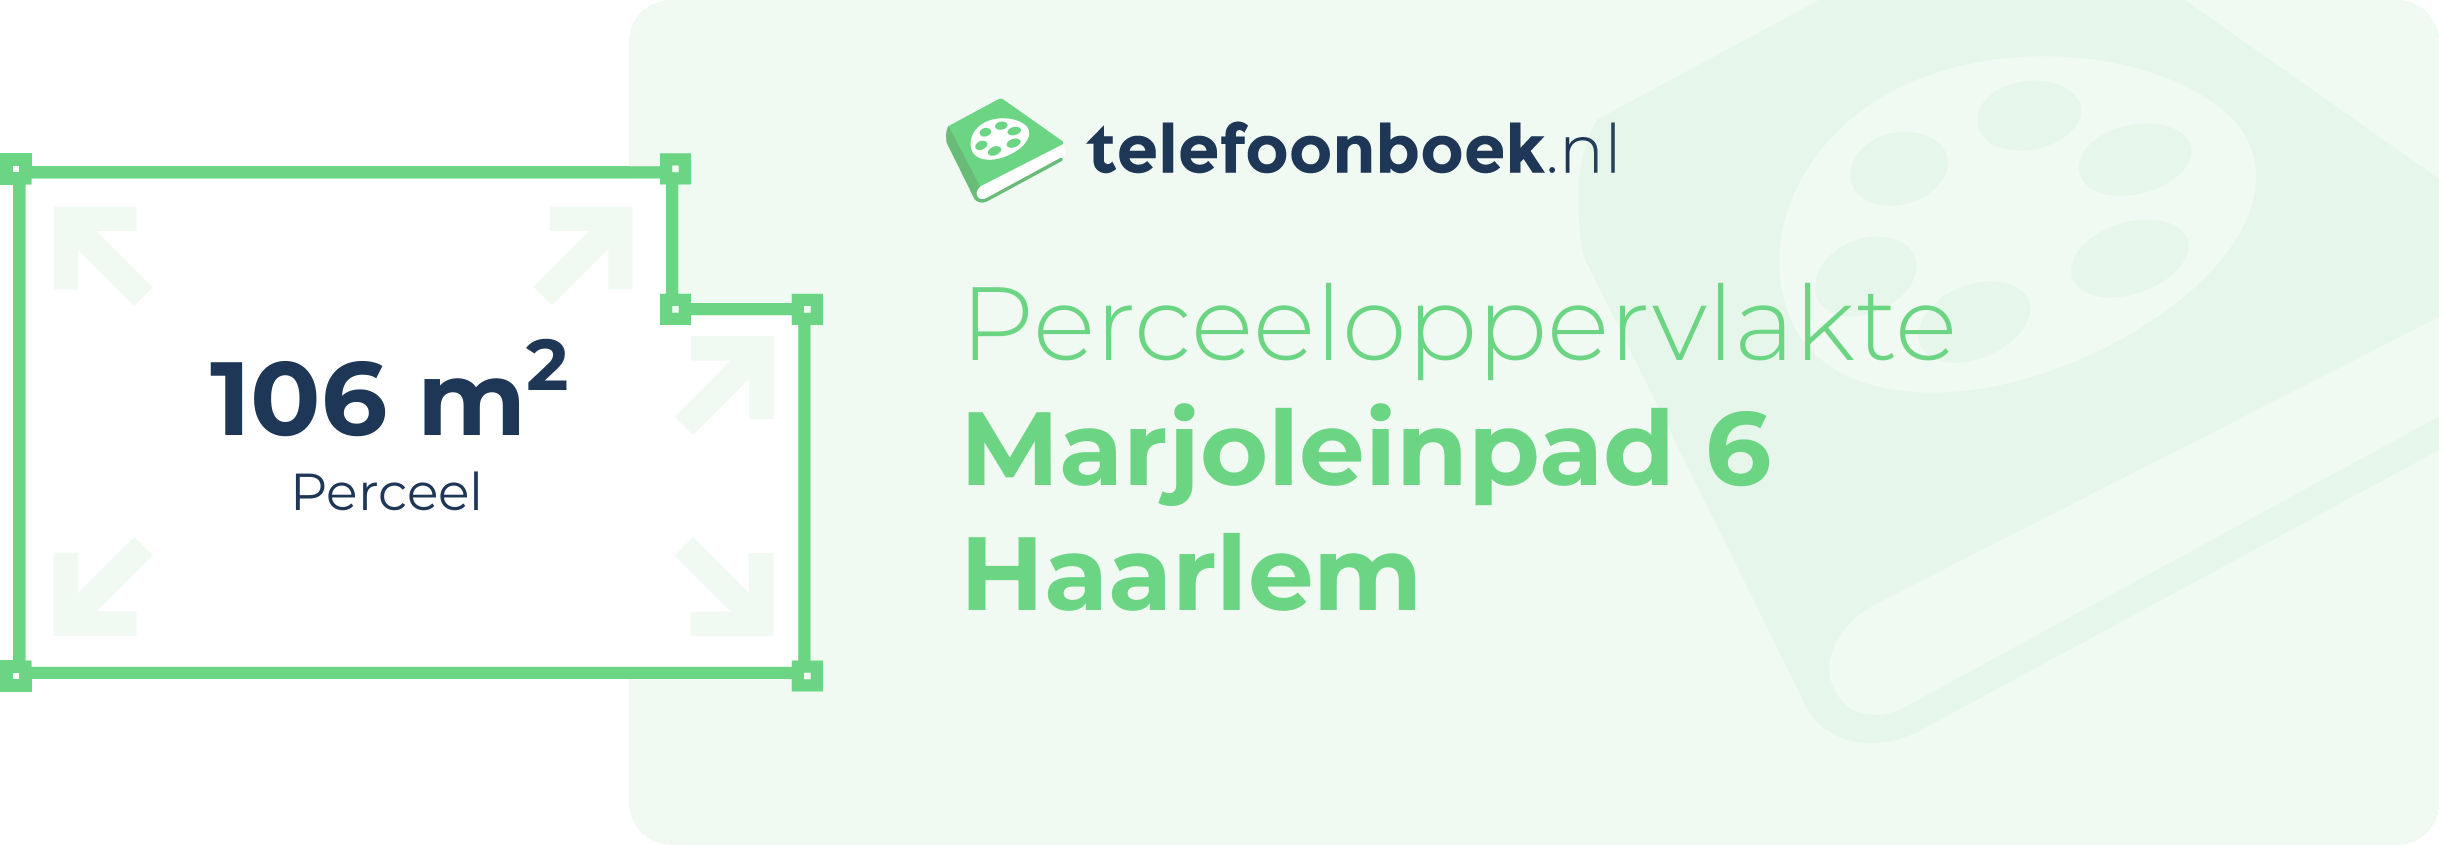 Perceeloppervlakte Marjoleinpad 6 Haarlem